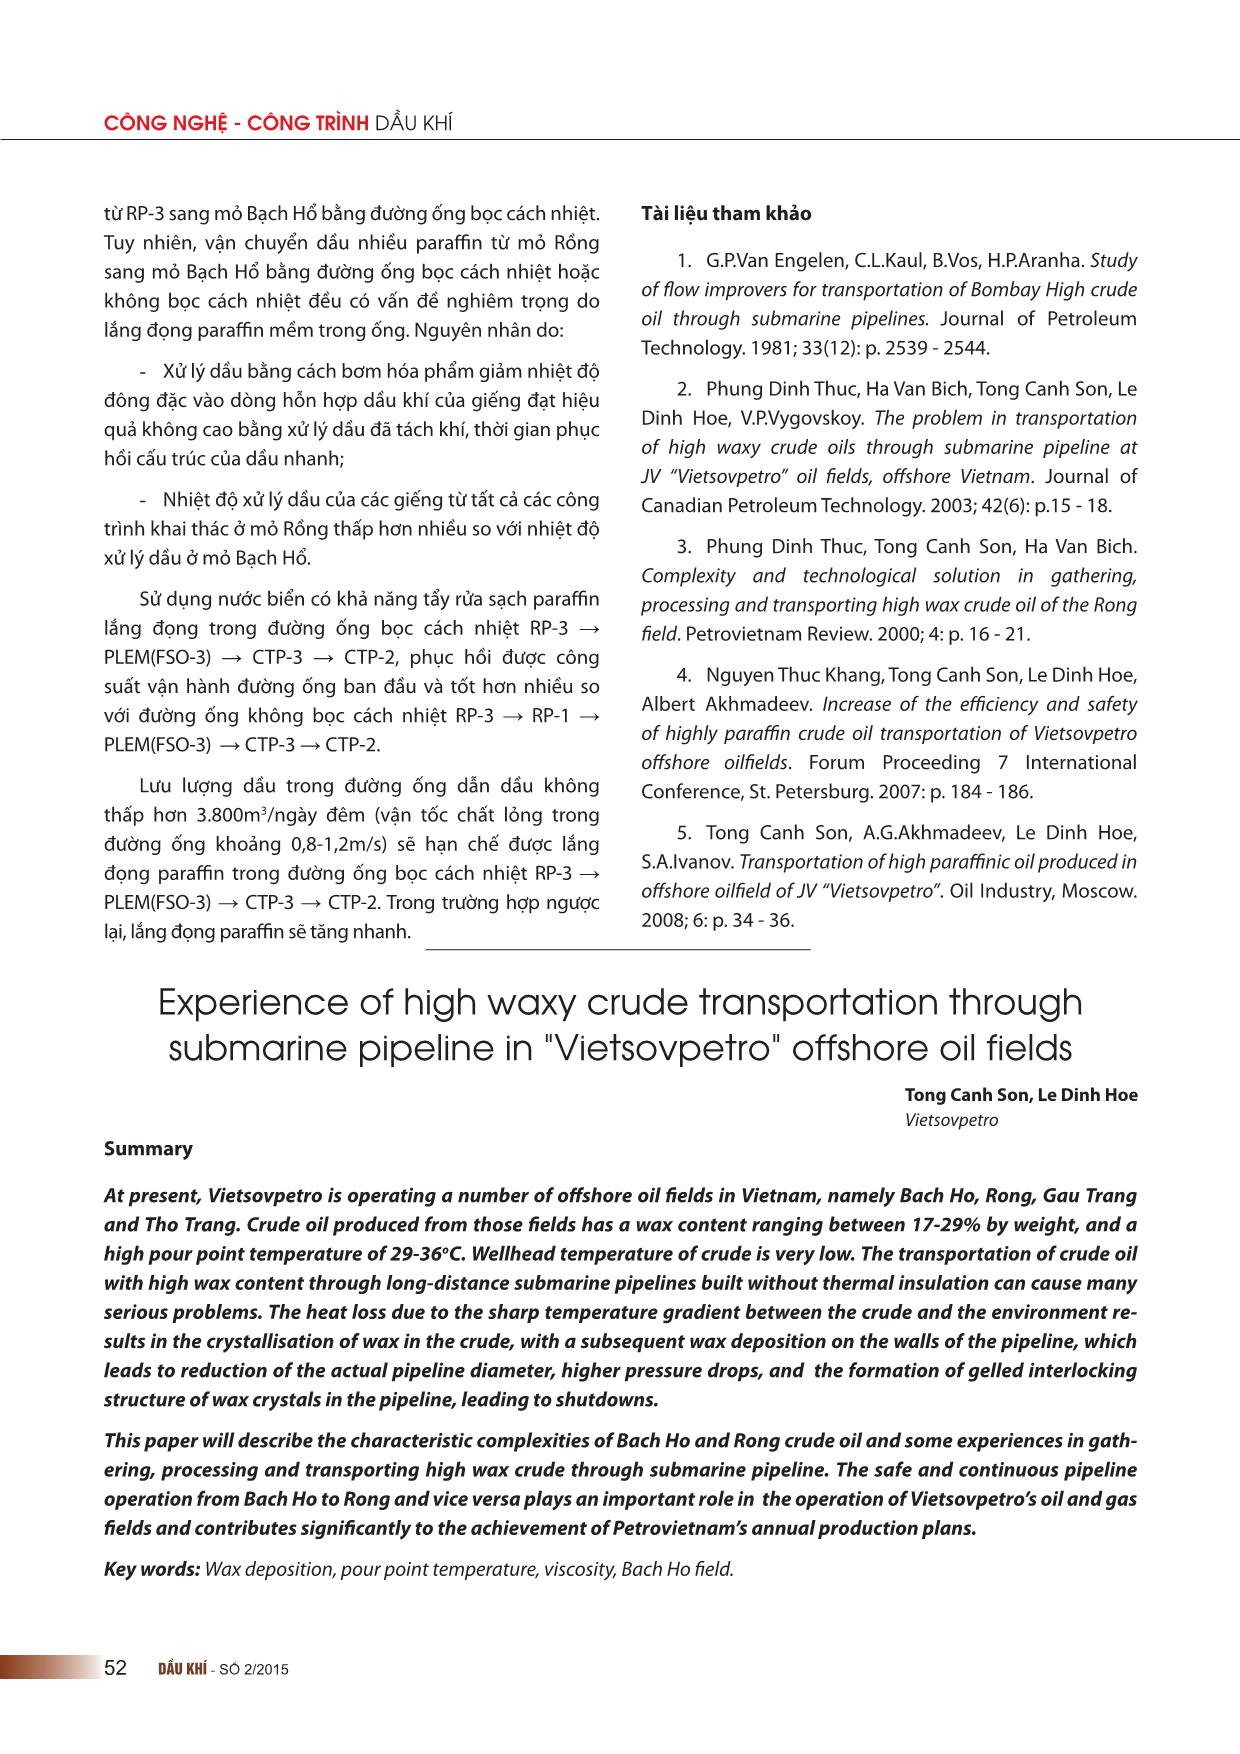 Kinh nghiệm vận chuyển dầu nhiều paraffin bằng đường ống ở các mỏ dầu khí ngoài khơi của liên doanh Việt-Nga “Vietsovpetro” trang 10